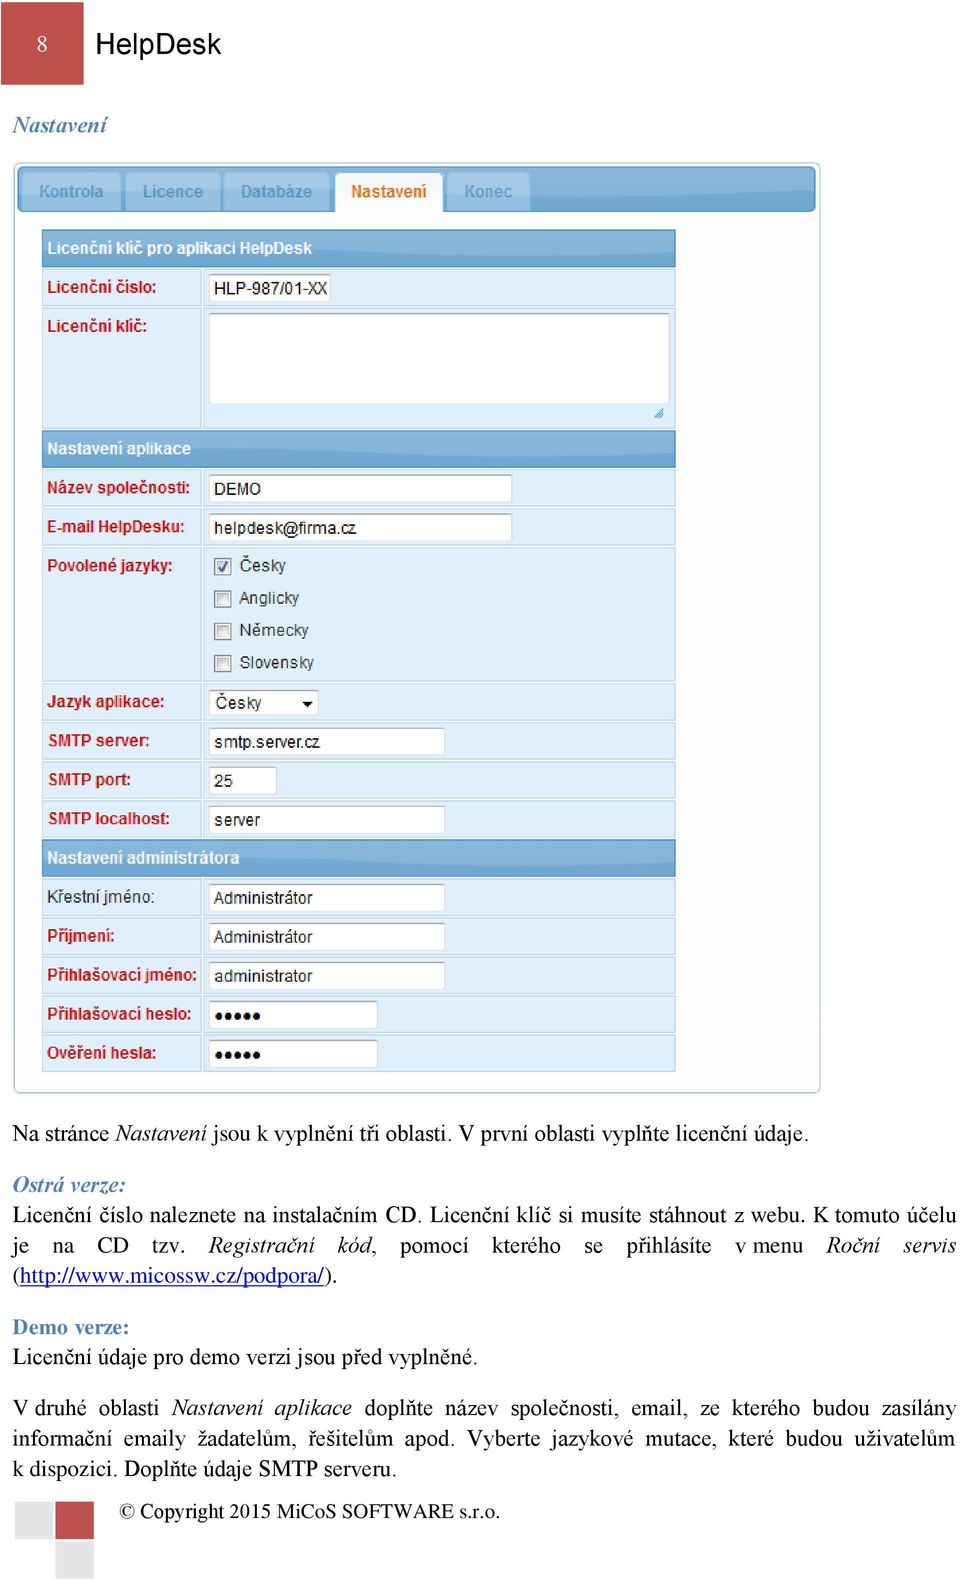 Registrační kód, pomocí kterého se přihlásíte v menu Roční servis (http://www.micossw.cz/podpora/).